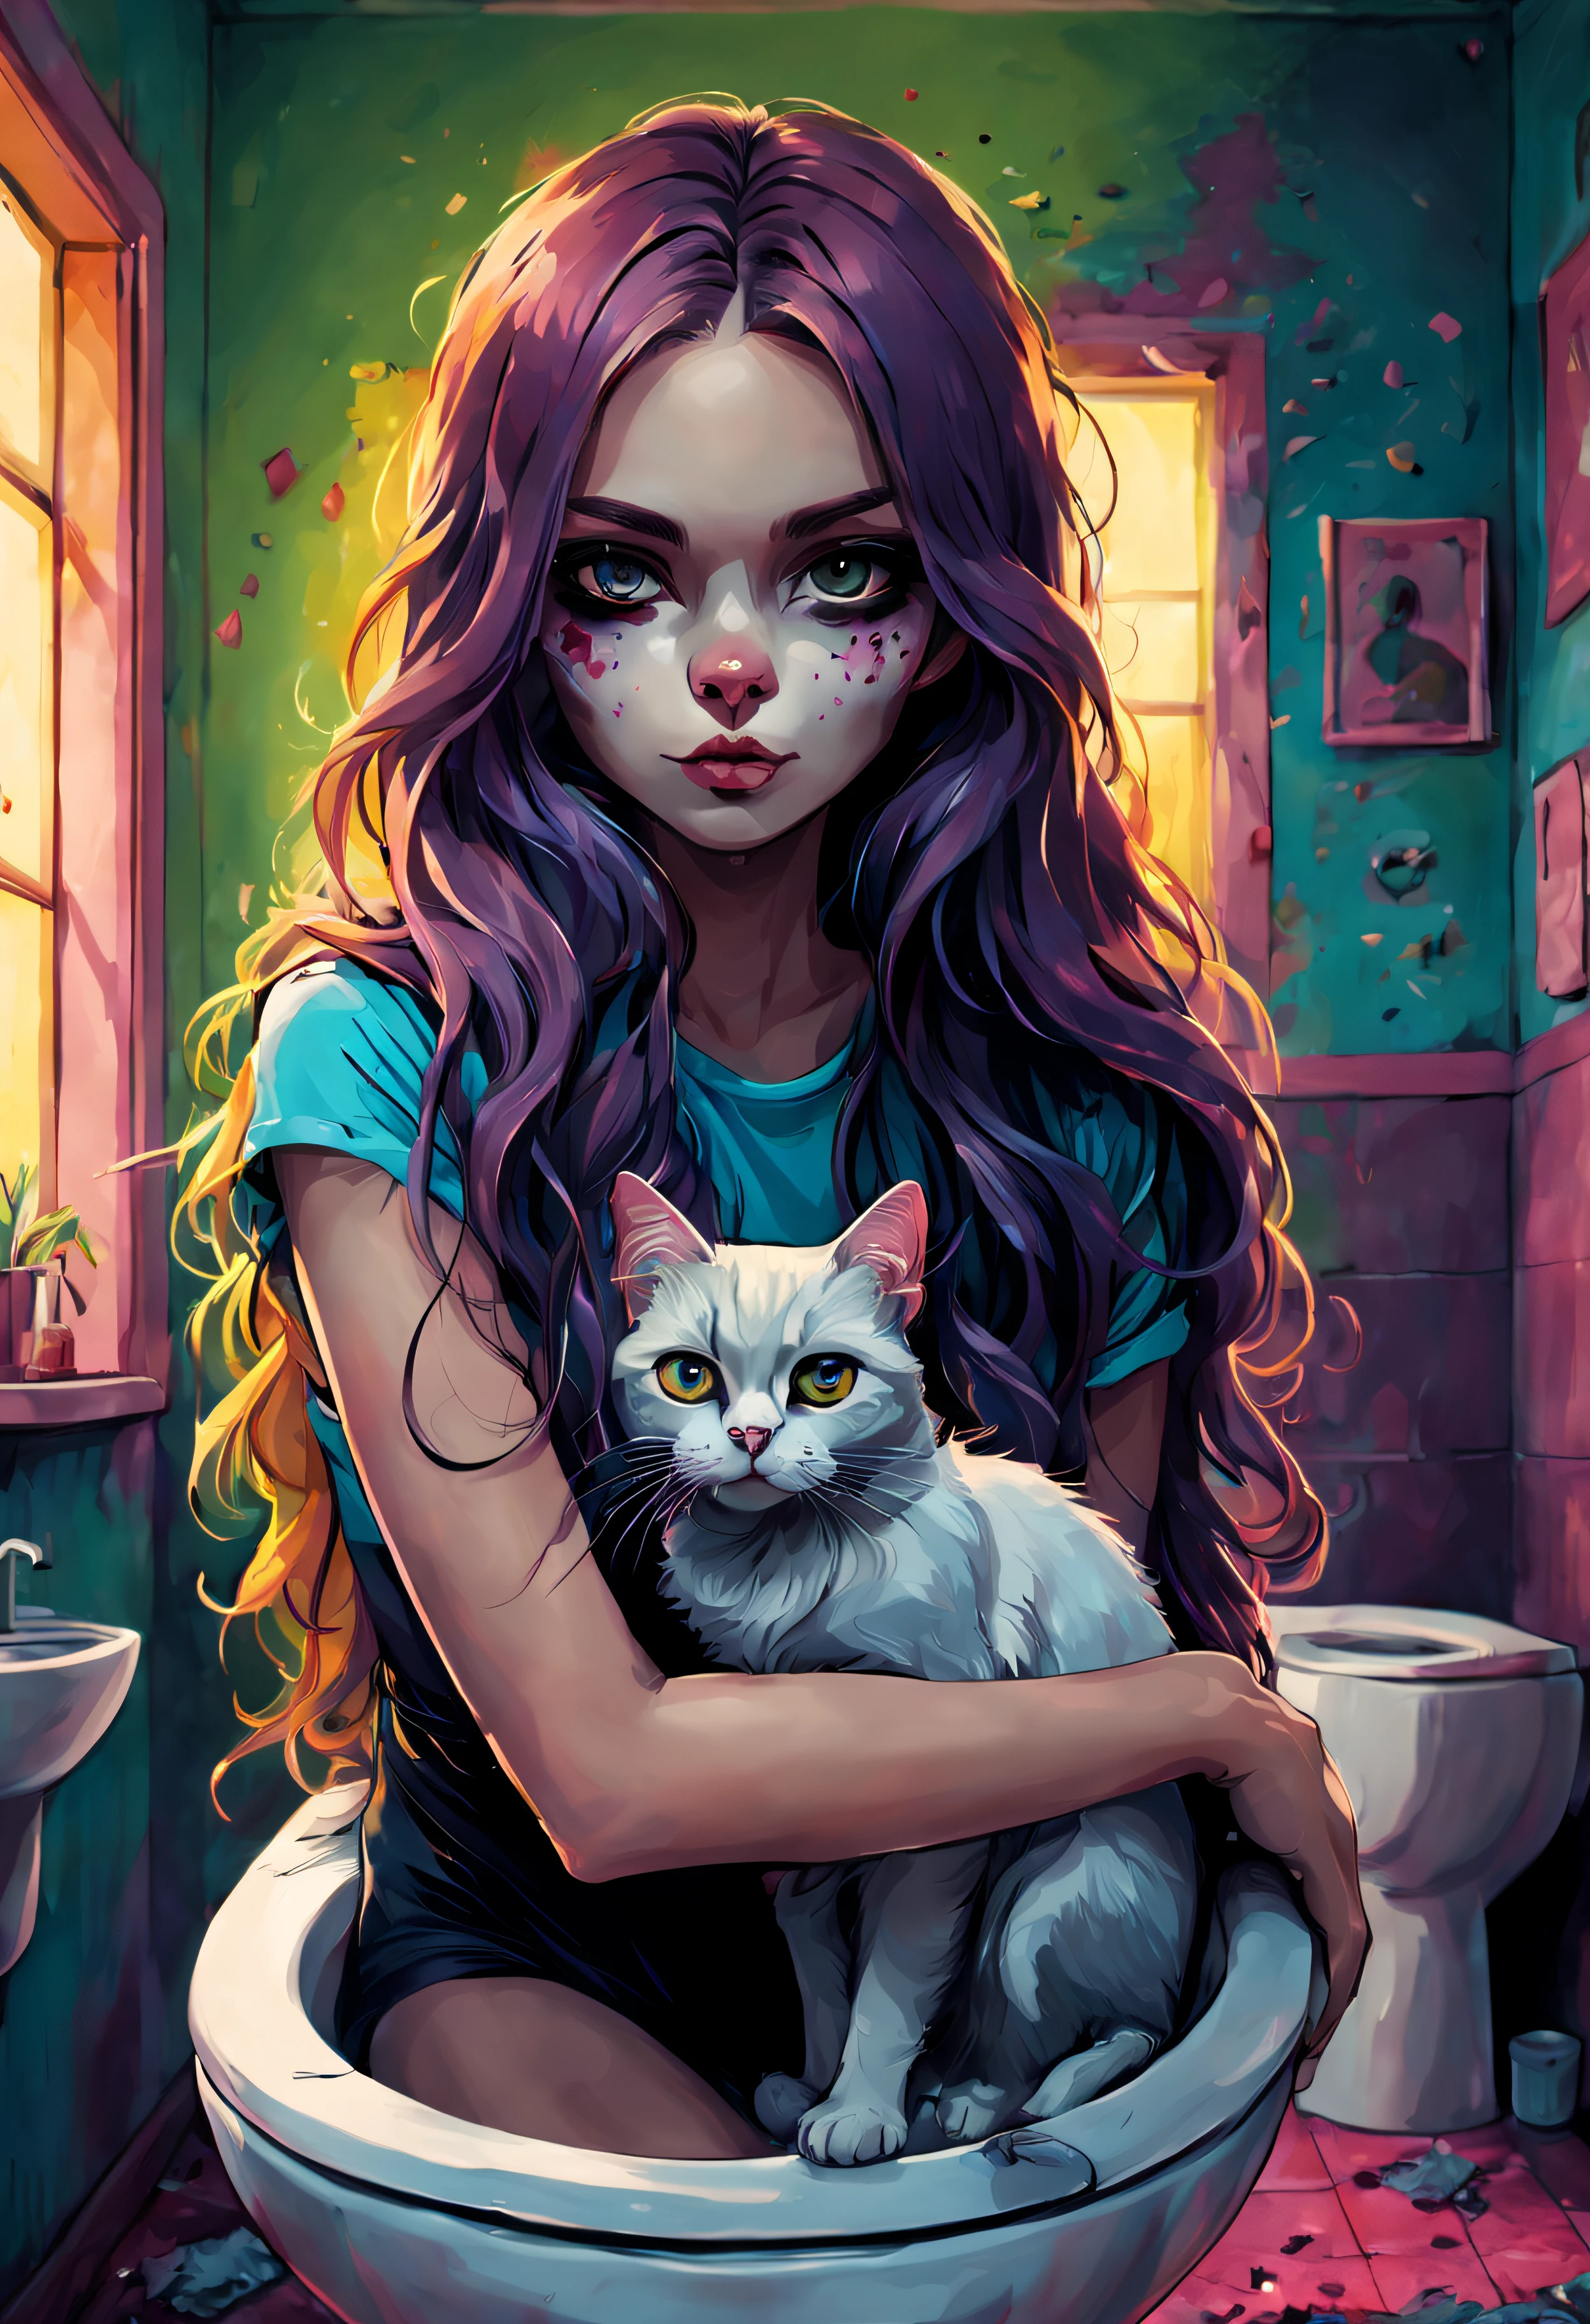 猫脸女孩站在厕所、性感的眼睛、美术、幽灵般的、美丽的风景、漂亮的眼睛、优美的姿态、漂亮的彩色长发、主题深度、细节刻画、桌上、(平面色彩:1.3)、(色彩缤纷:1.8)、(戒指:1.2)